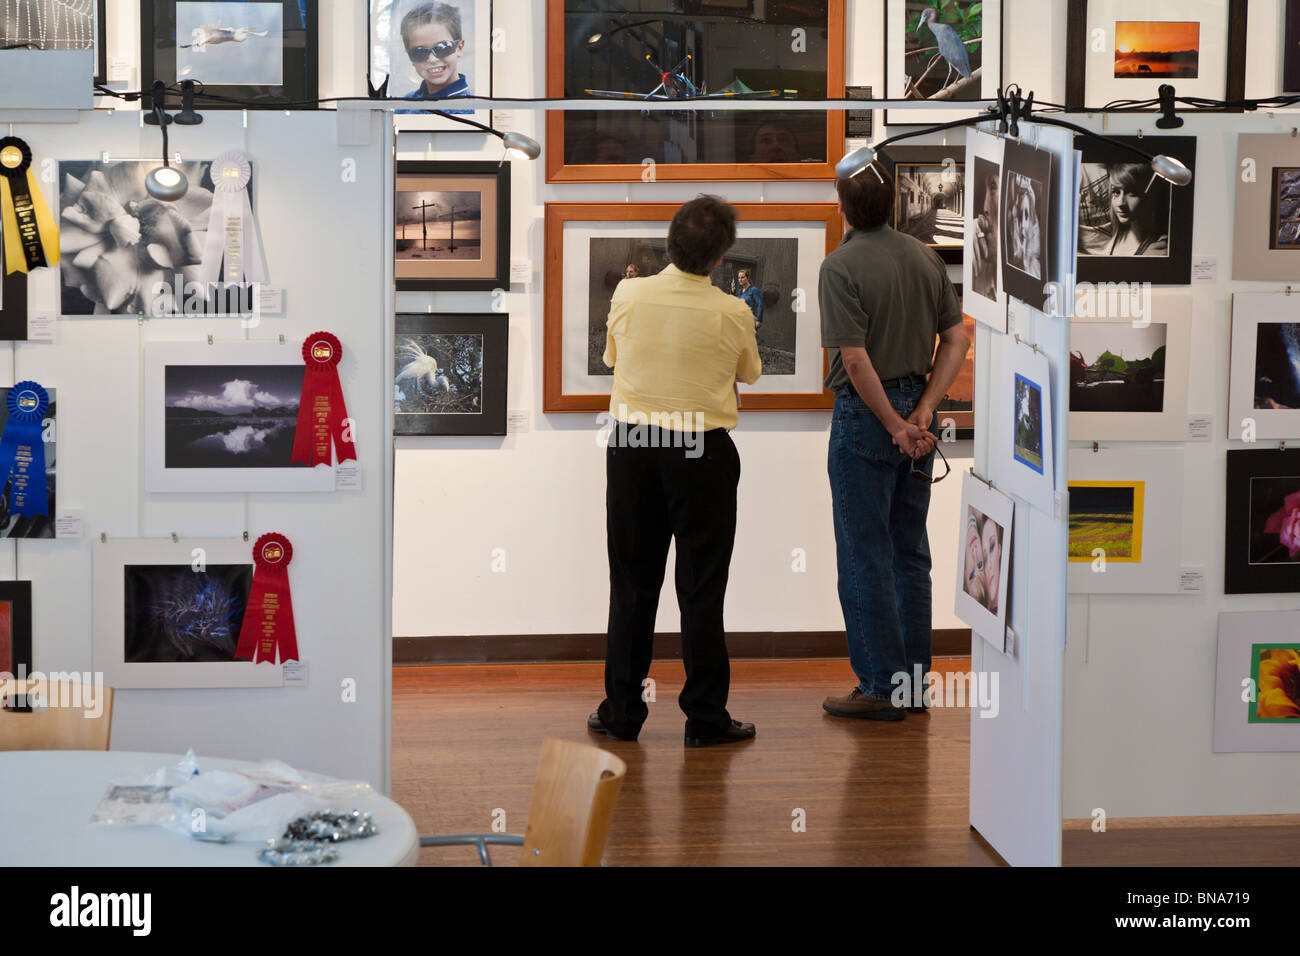 Los visitantes de una galería de arte, una exposición de fotografía de estudio en el centro de la ciudad de ladrillo para las artes en el centro de la ciudad de Ocala, Florida Foto de stock